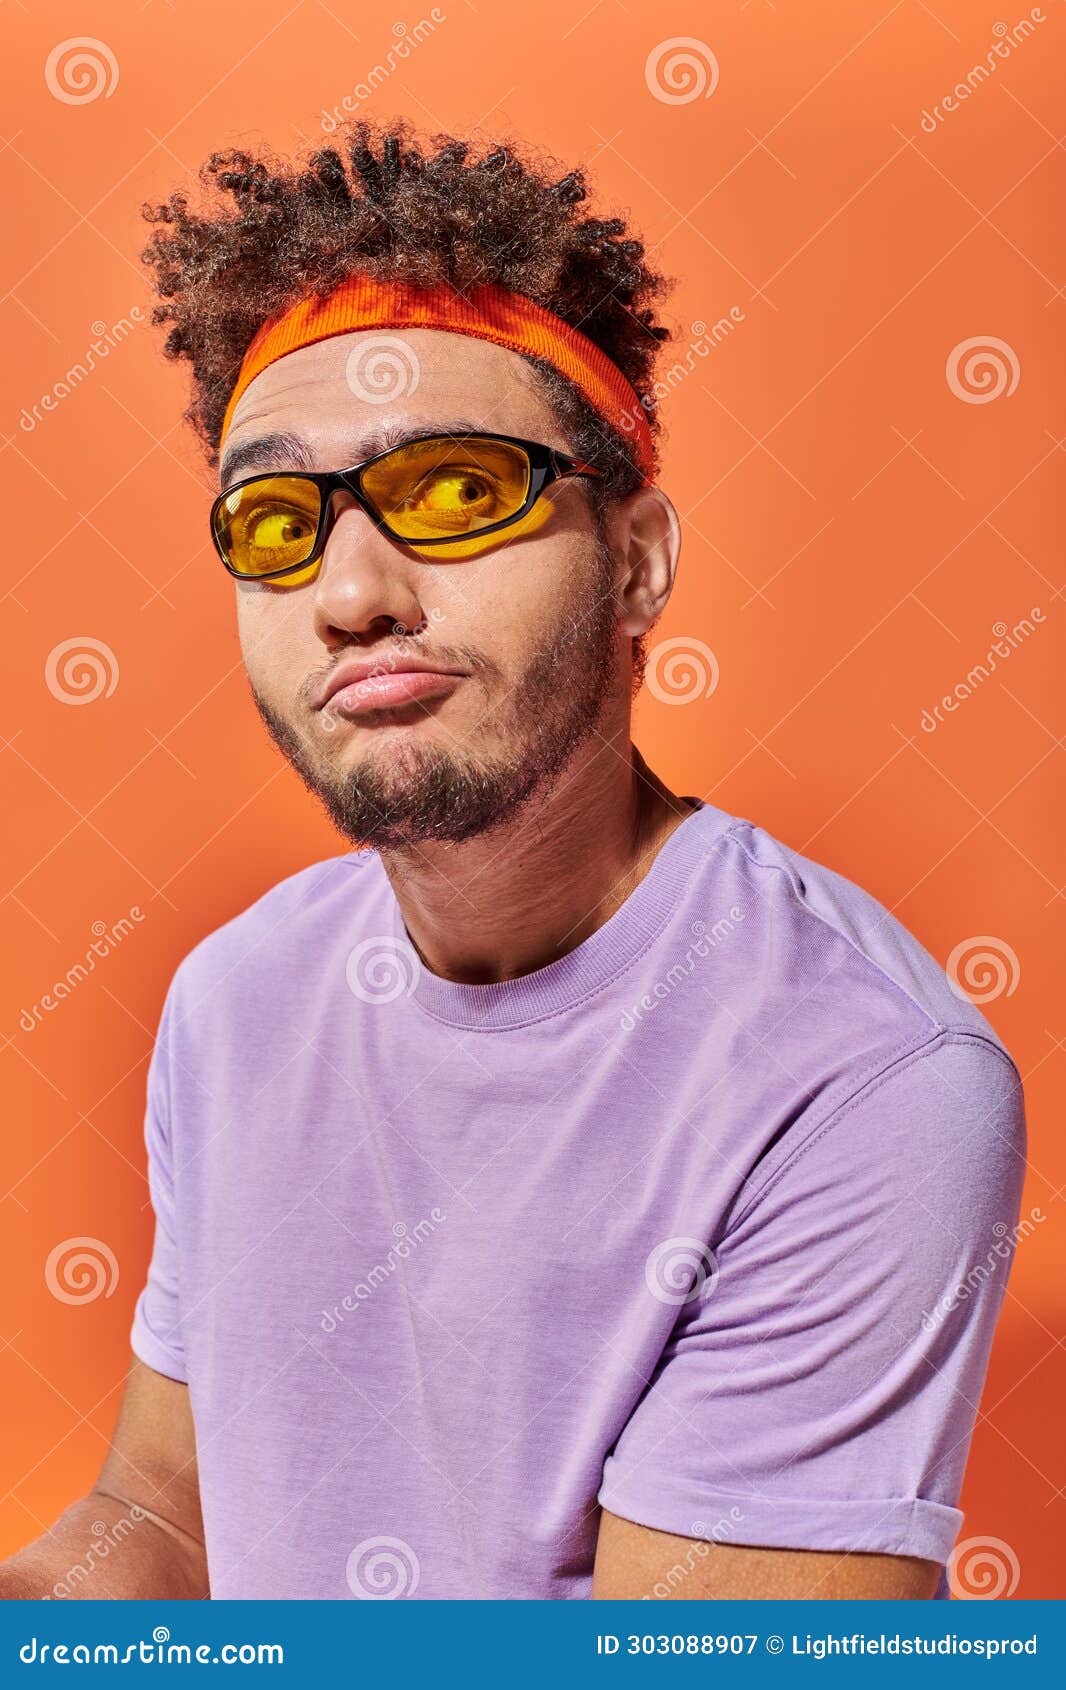 confused african american fella in eyeglasses